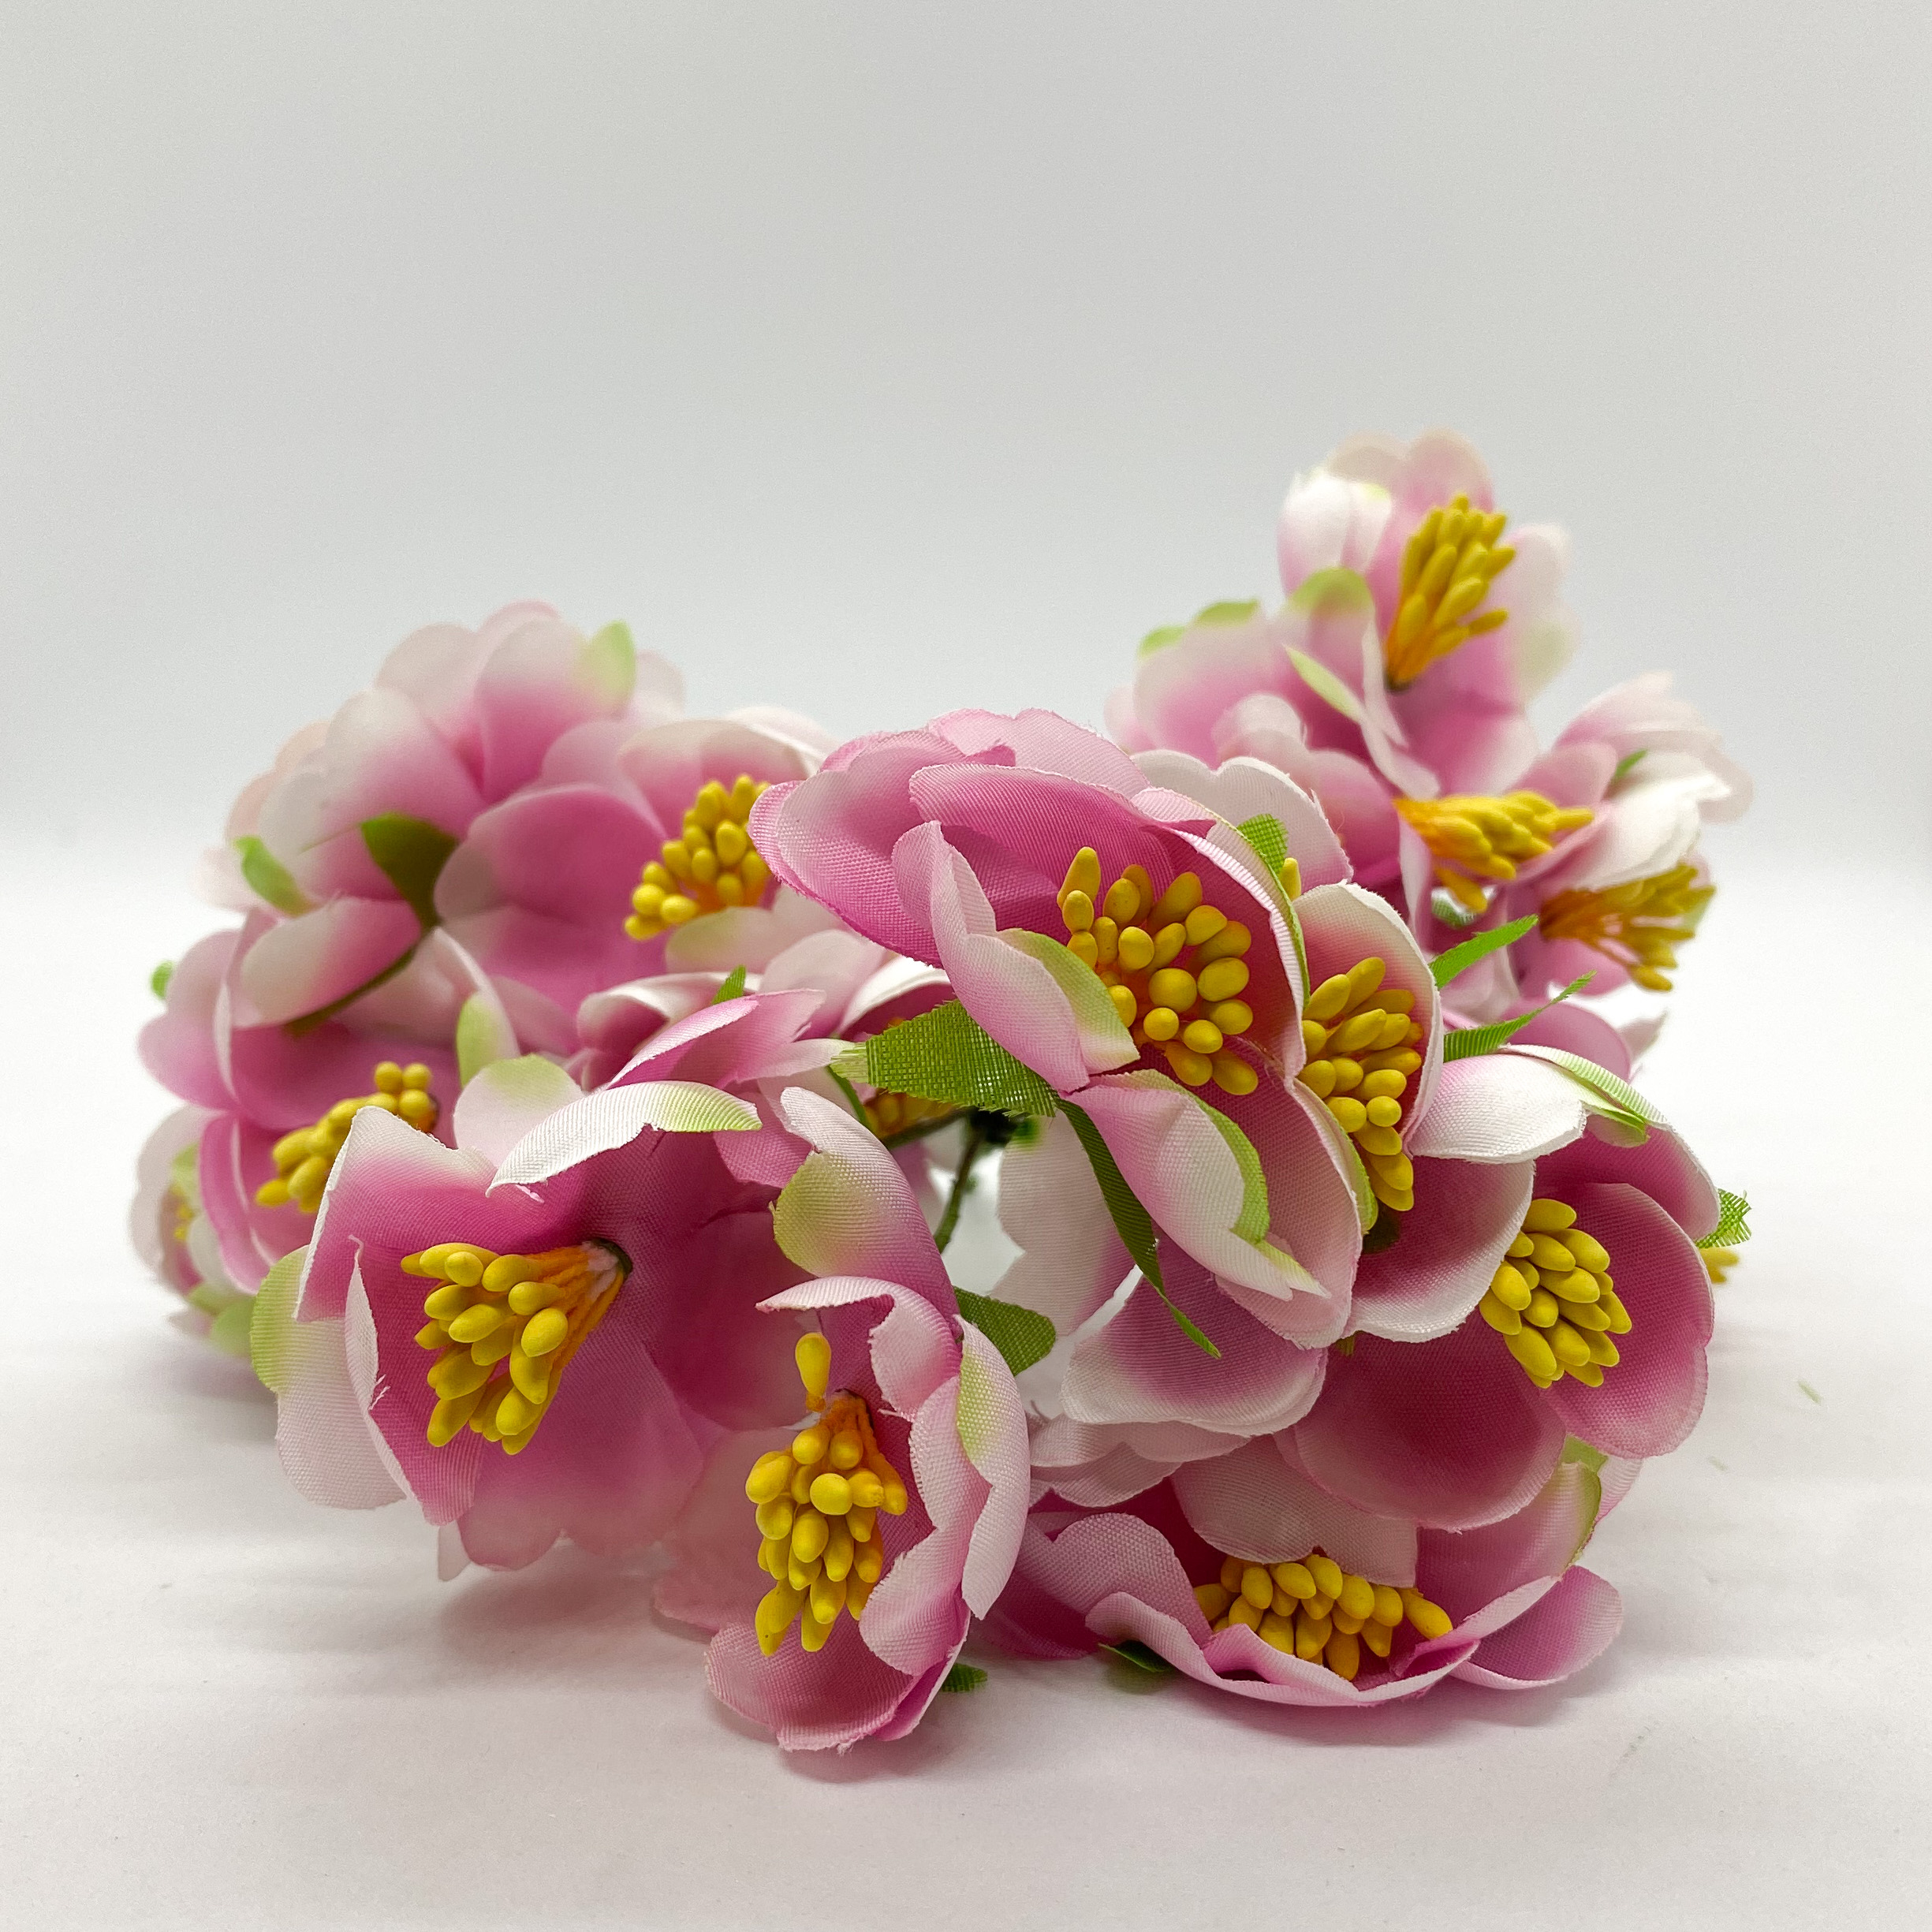 Набор тканевых декоративных цветочков, розовый с зеленым, 6 шт.